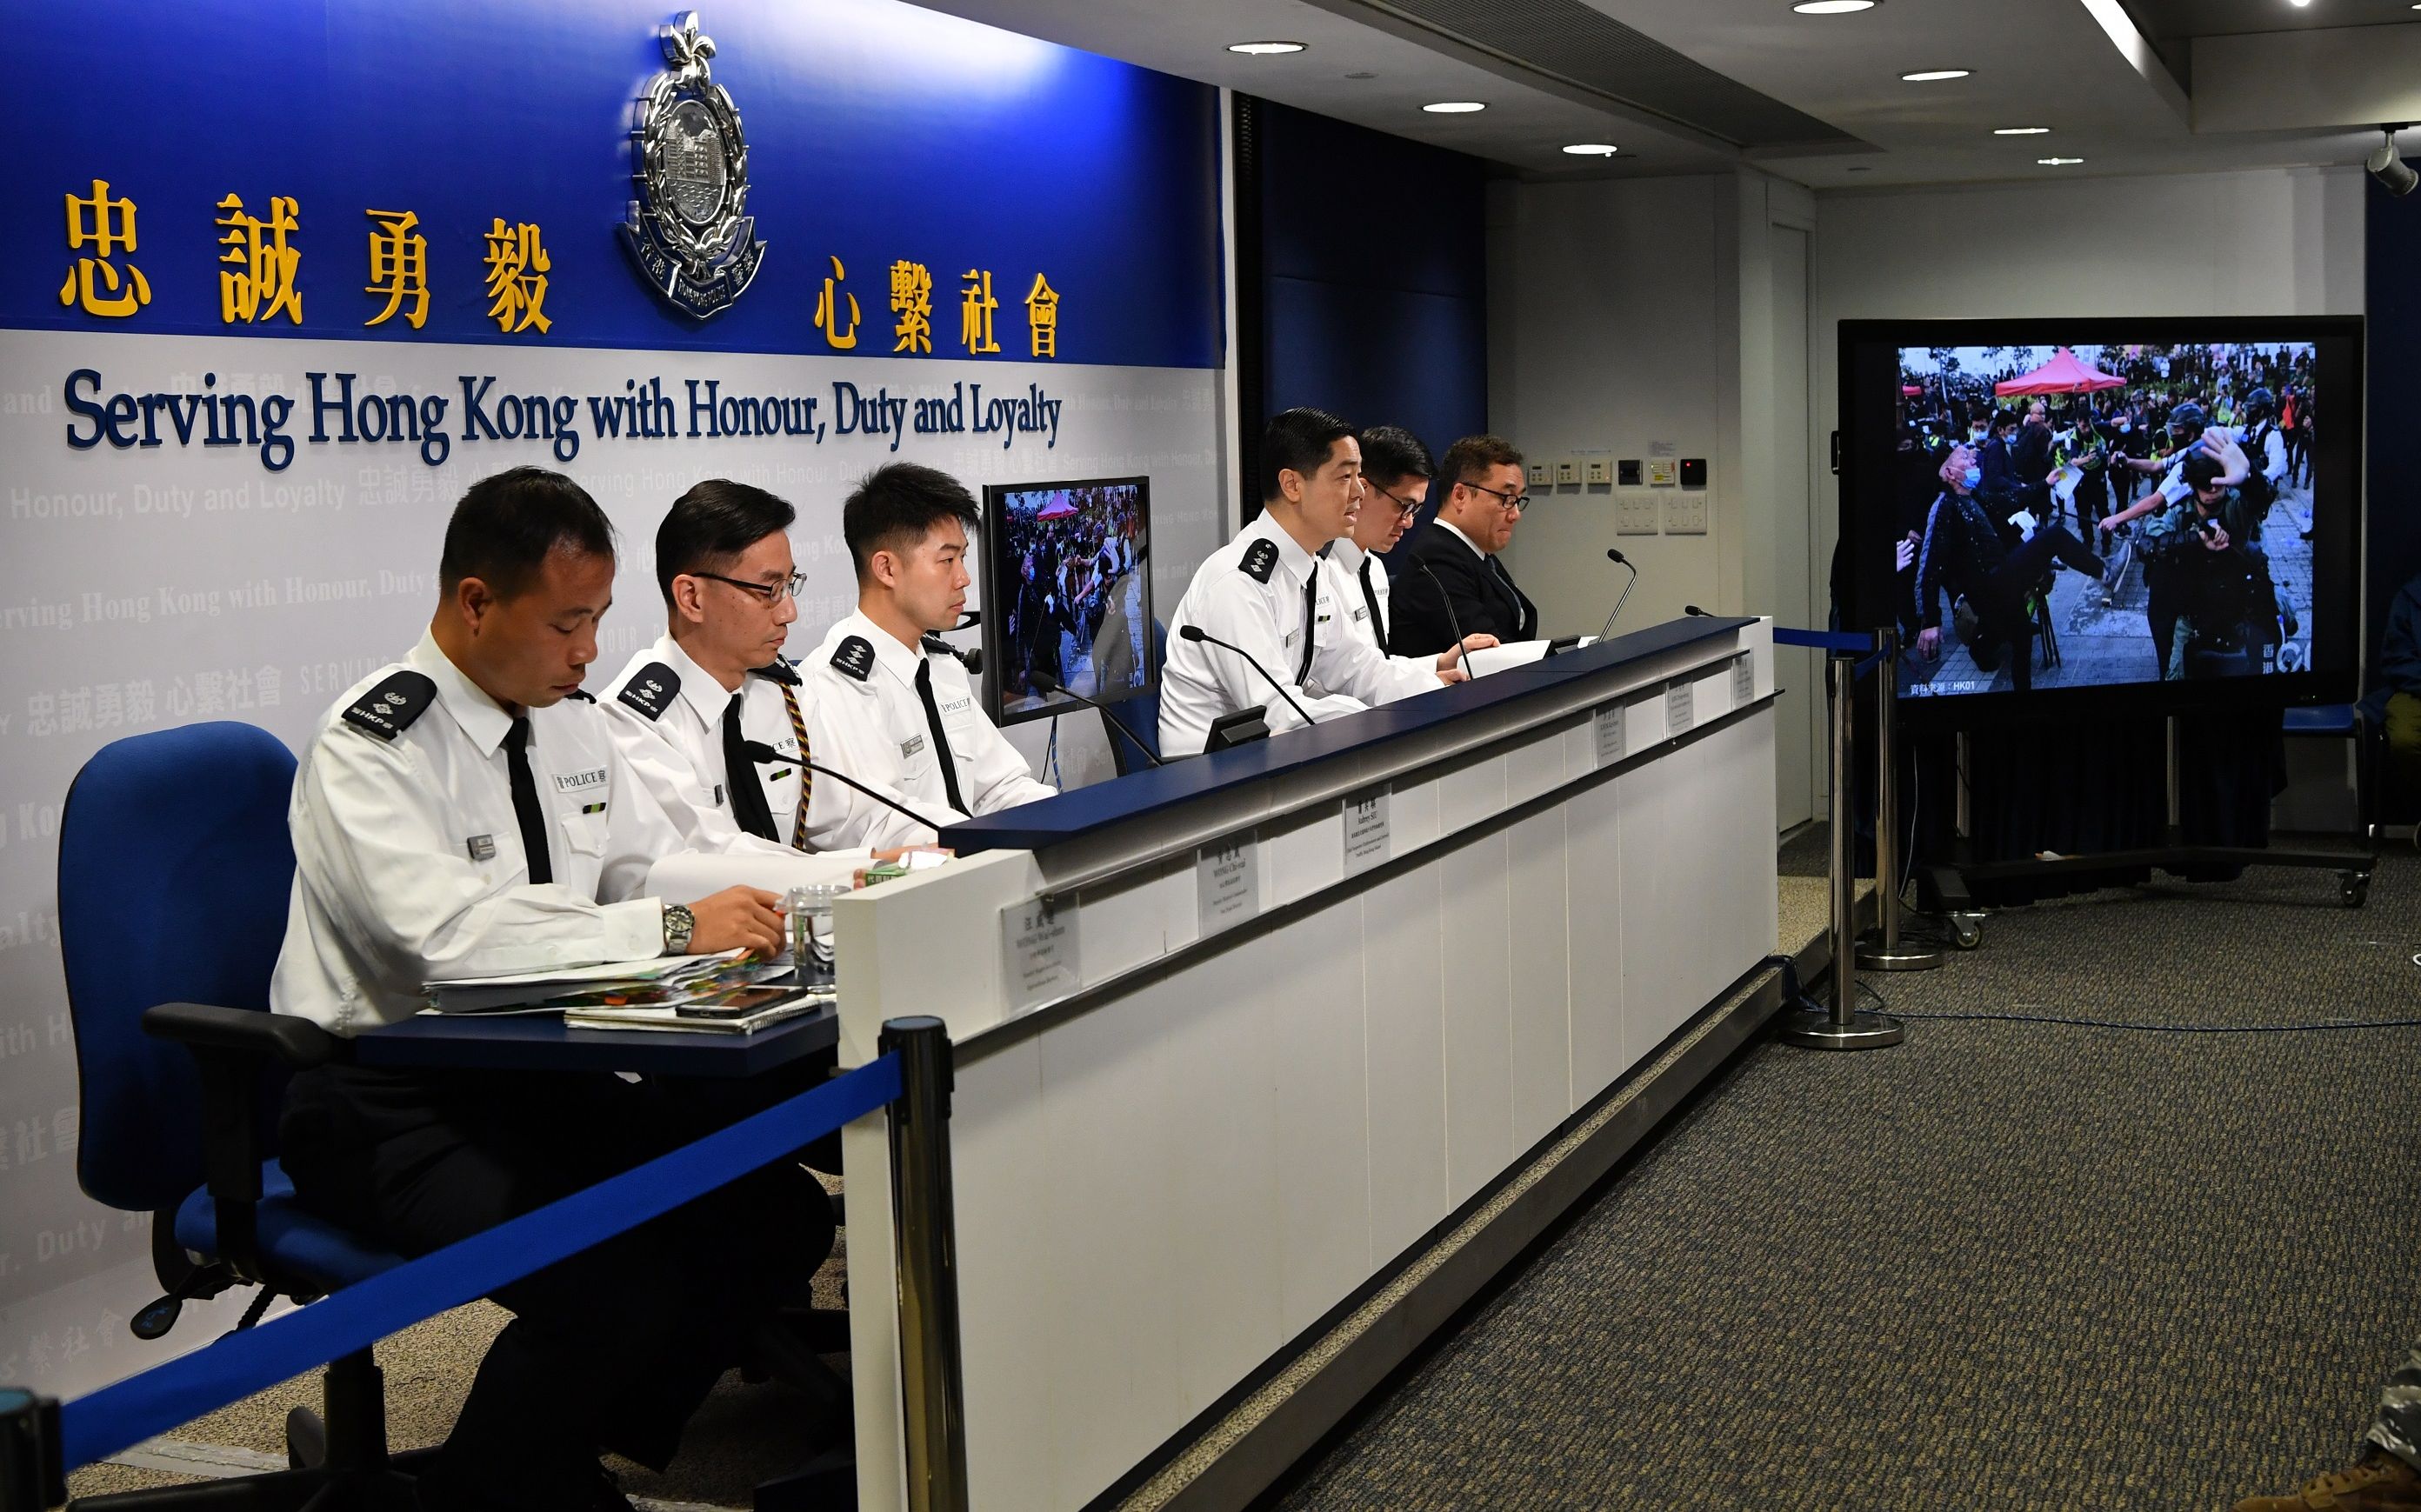 香港警方:全港市民都希望有一个和平,安全的平安夜